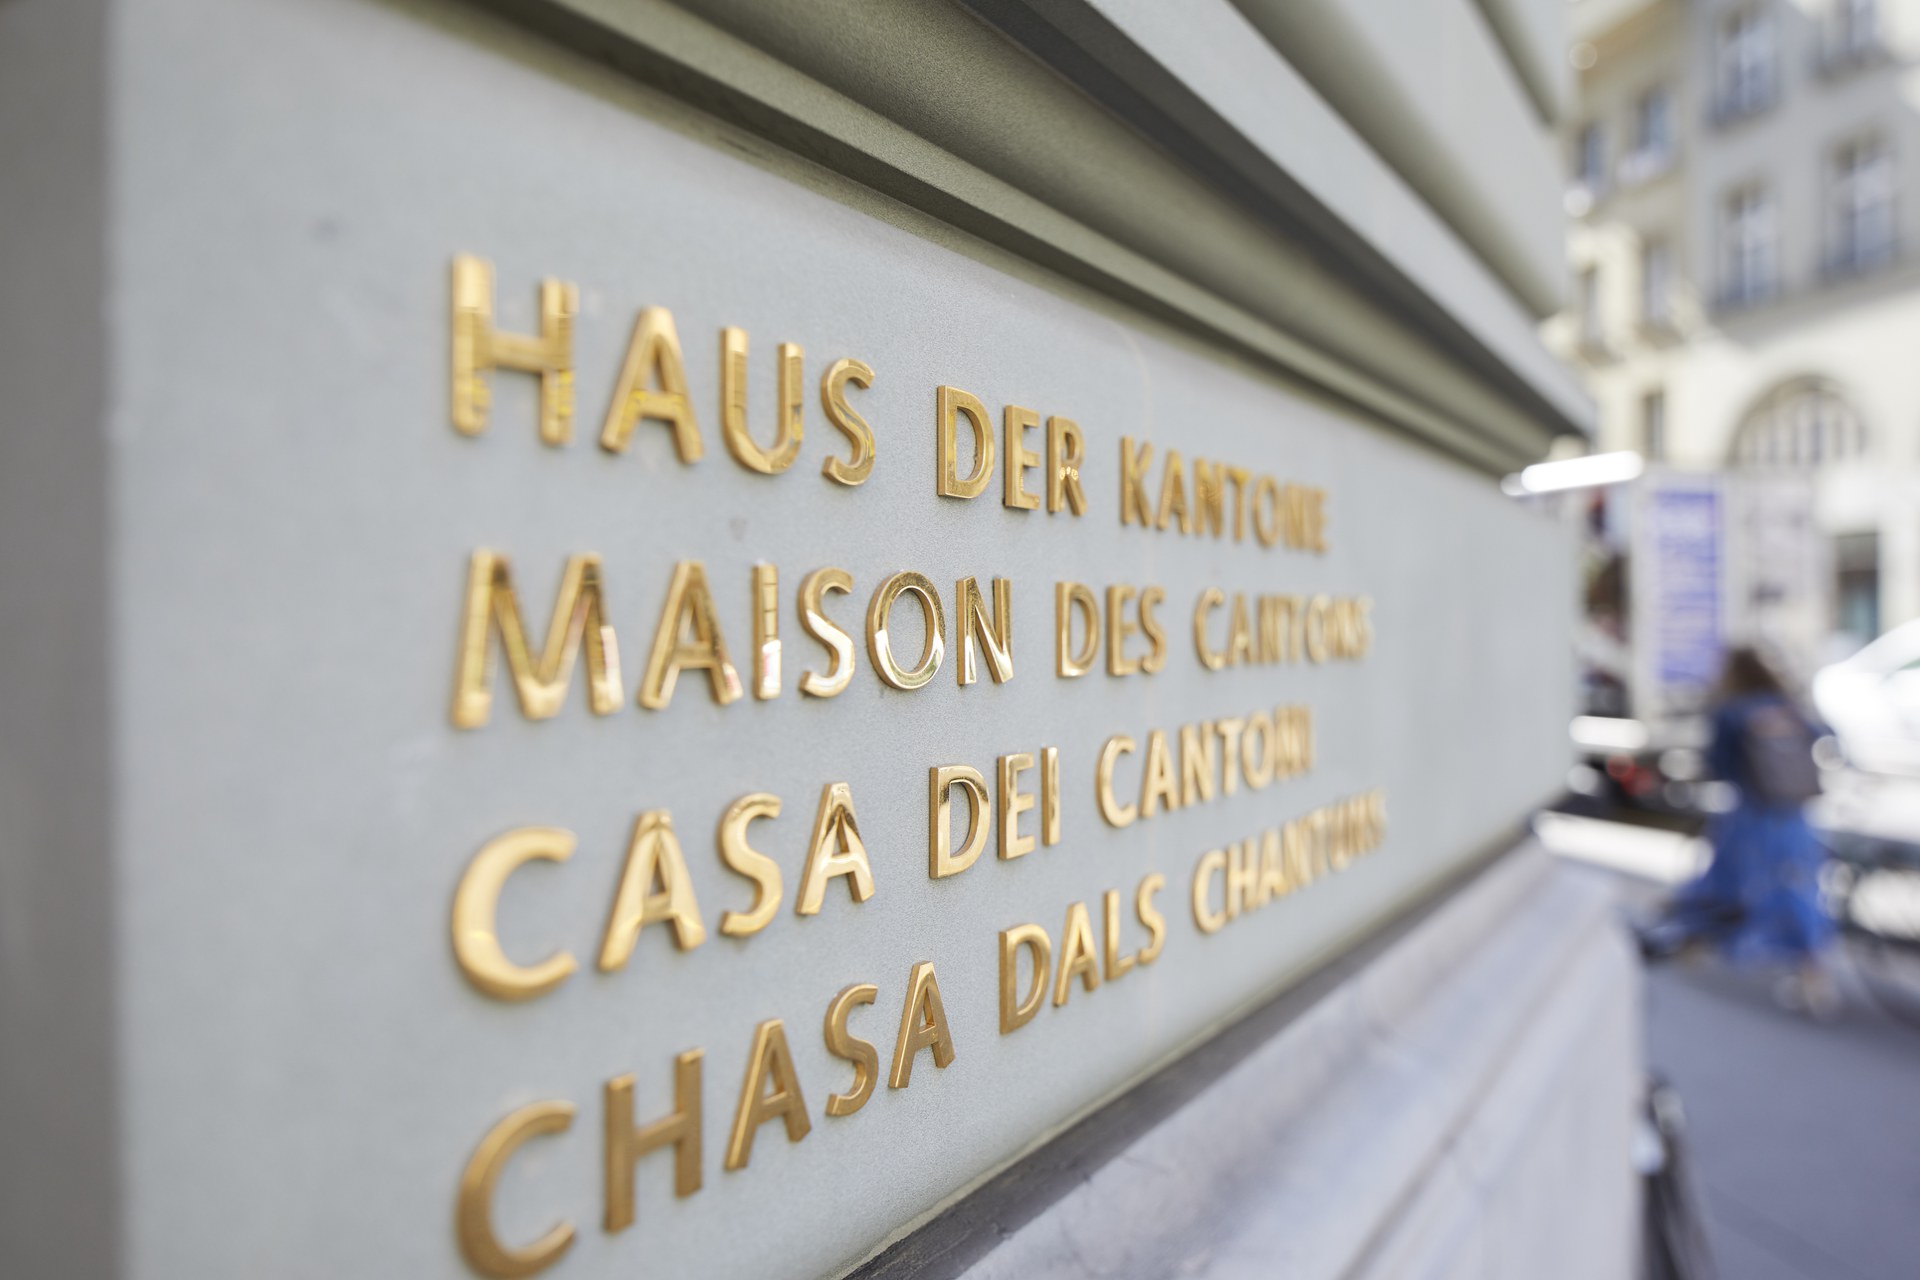 Schriftzug "Haus der Kantone / maison des cantons / casa dei cantoni / chasa dals chantuns" an der Fassade des Haus der Kantone